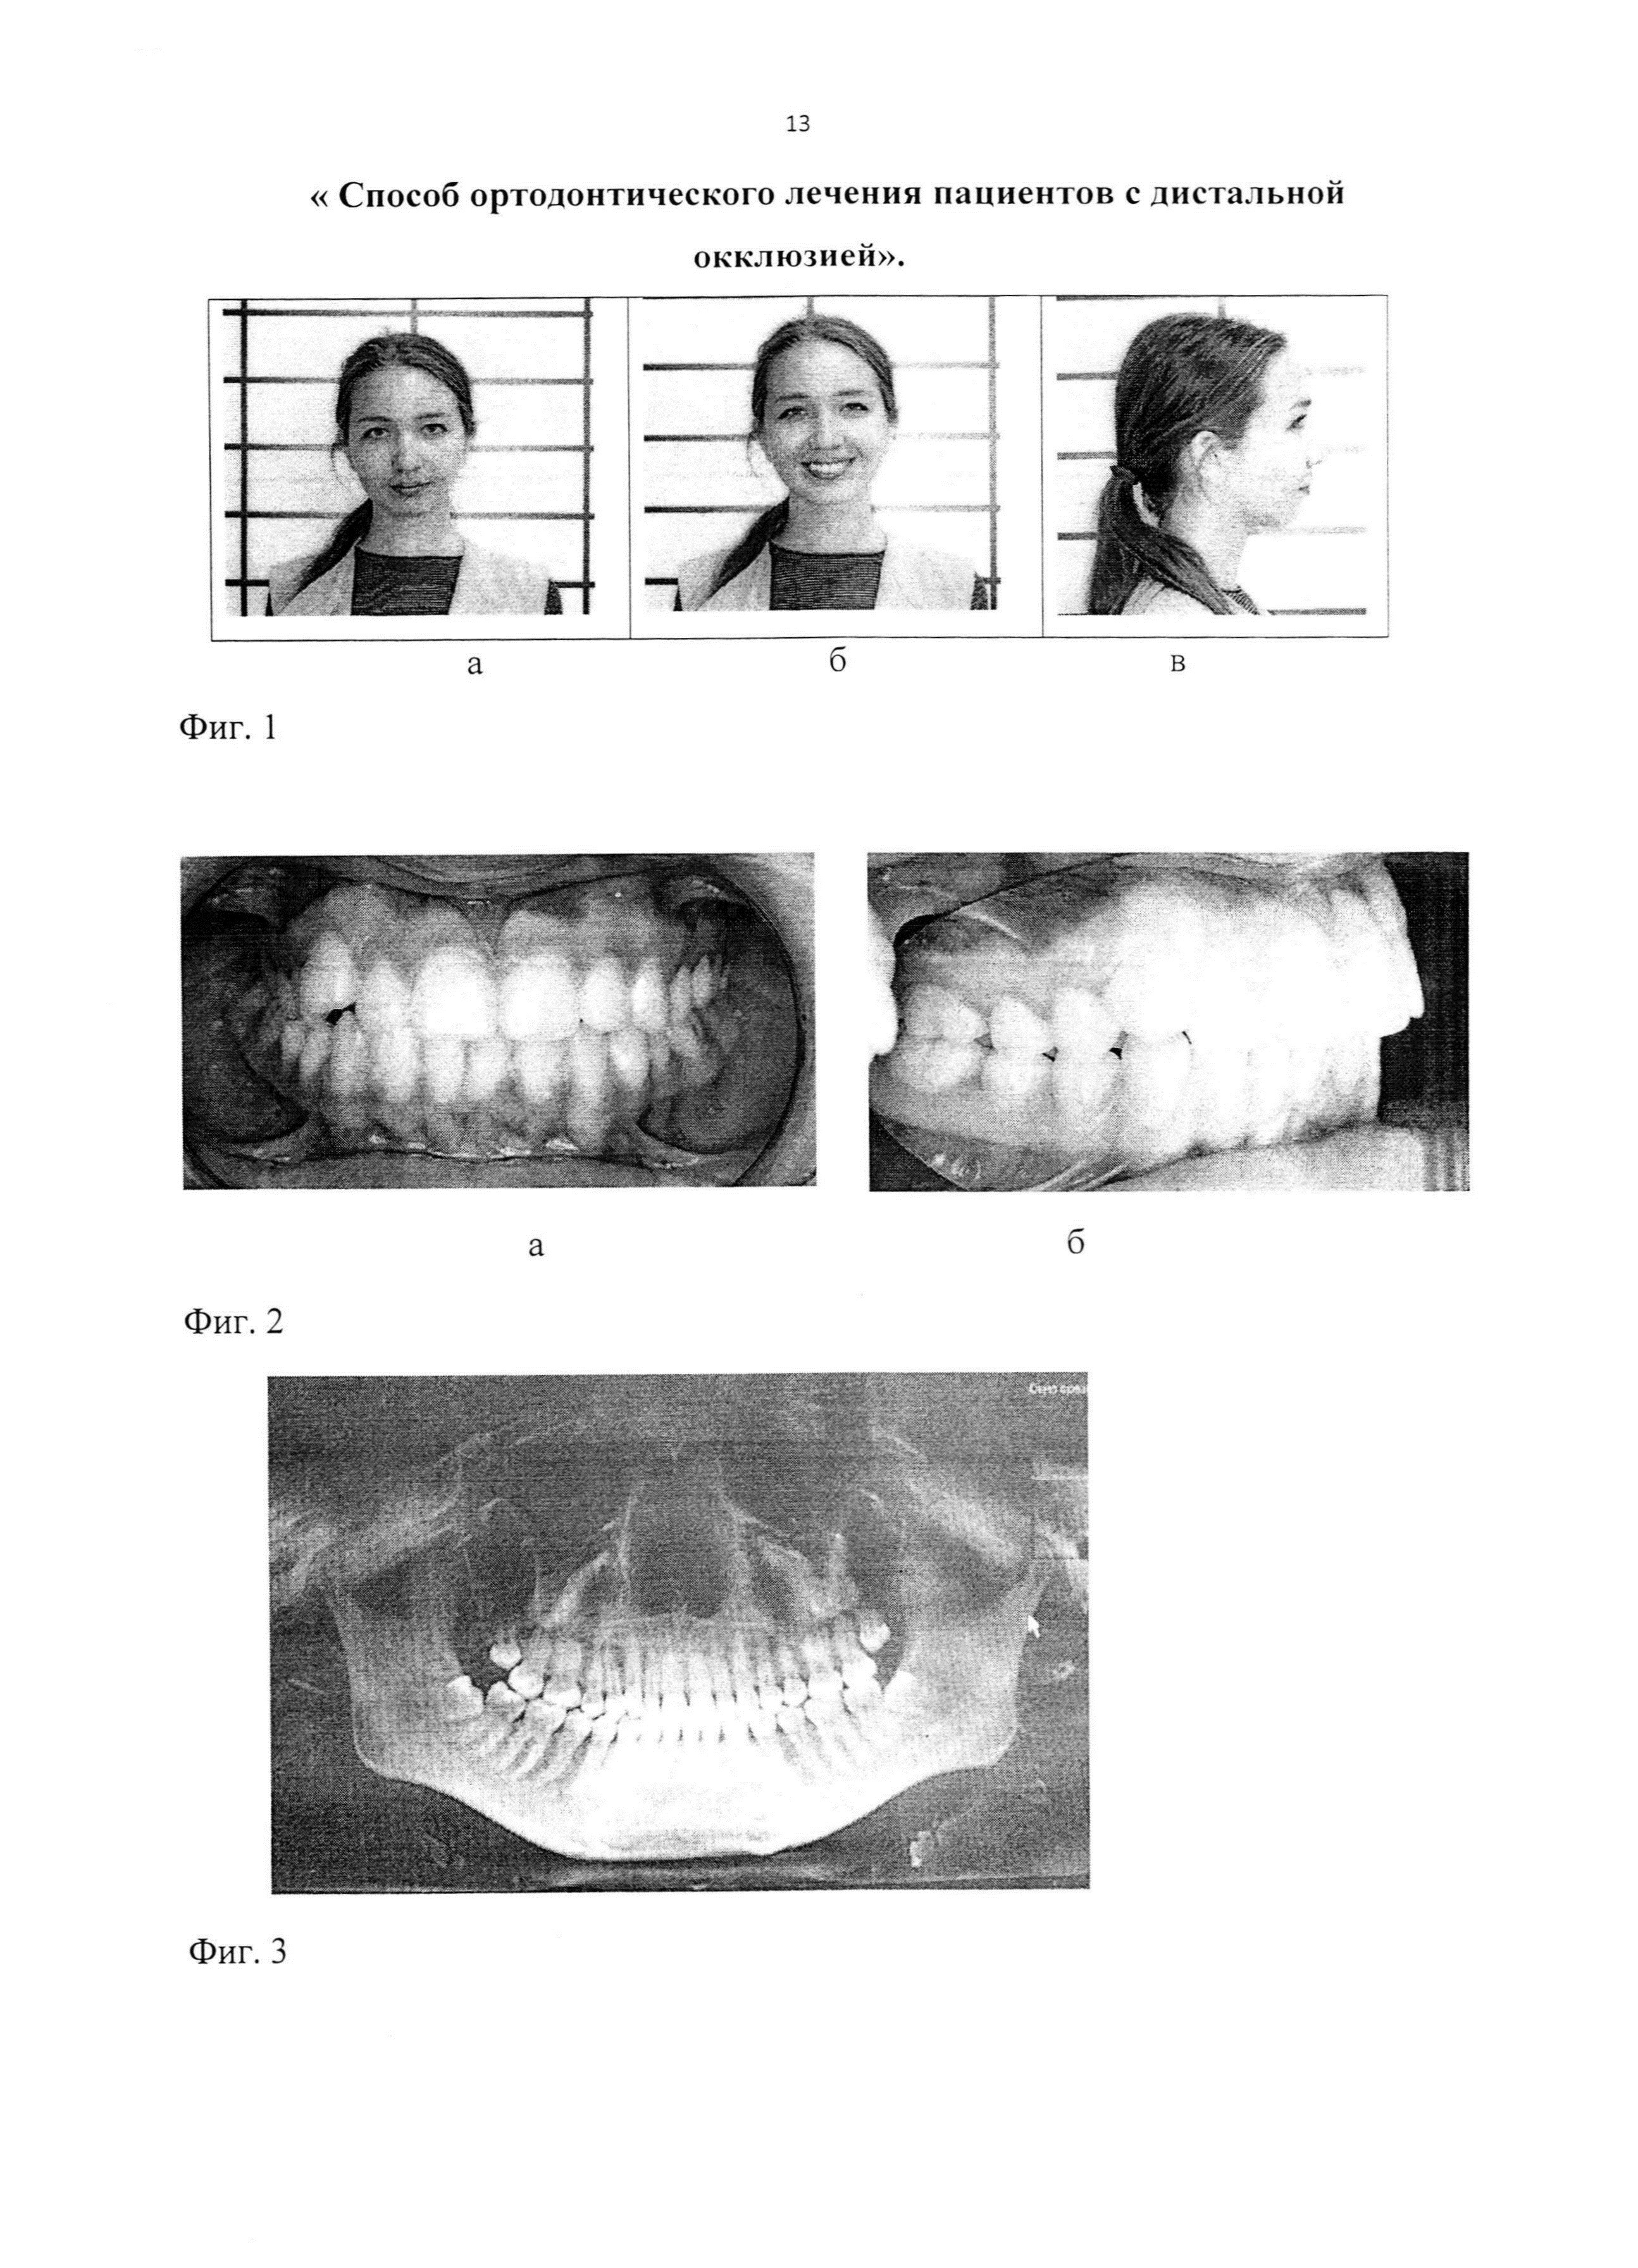 Способ ортодонтического лечения пациентов с дистальной окклюзией